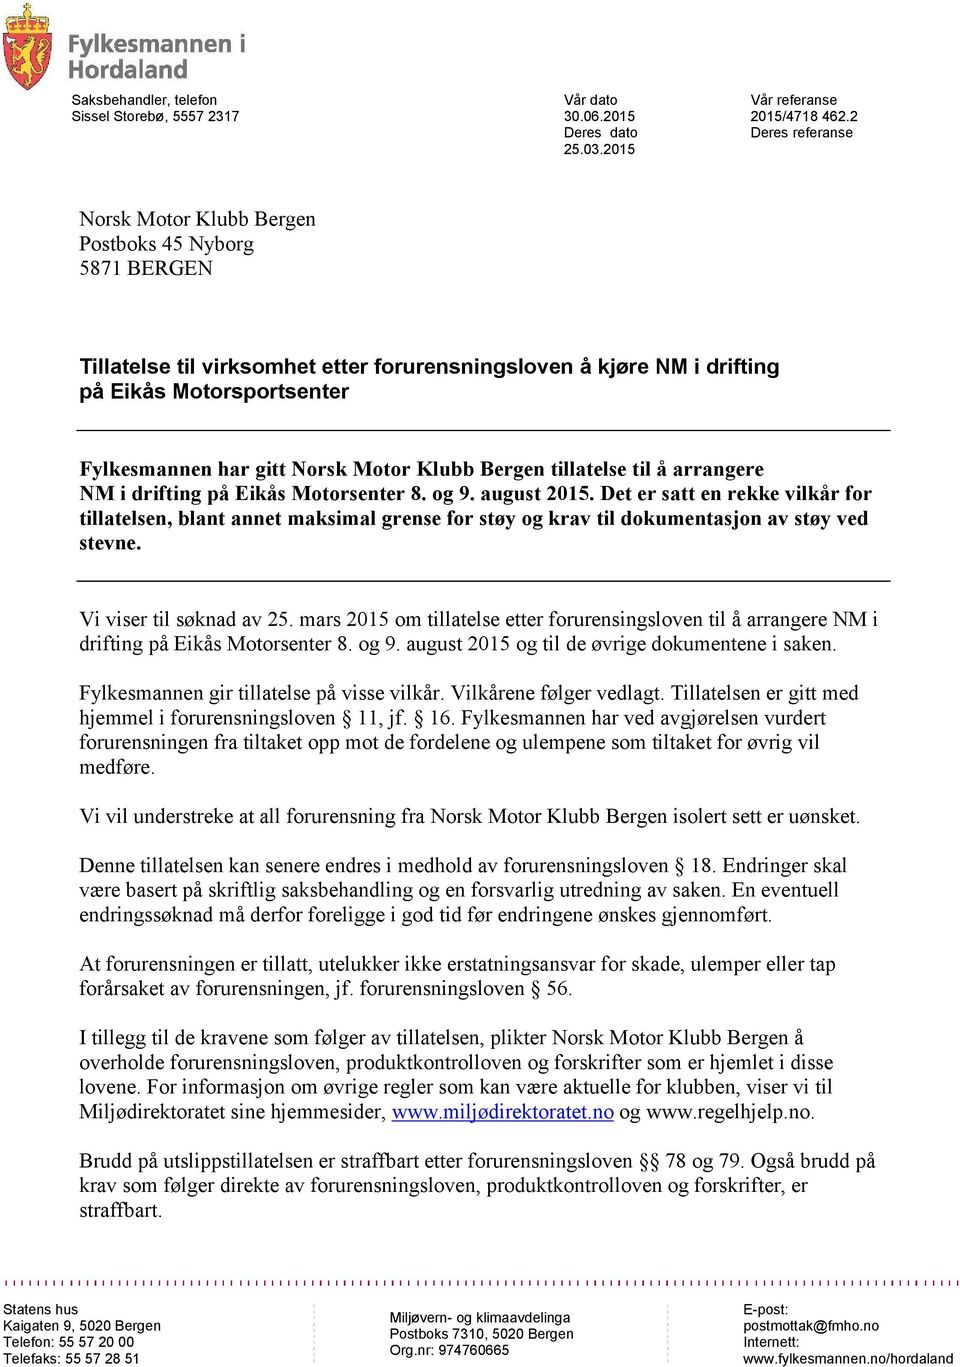 Norsk Motor Klubb Bergen tillatelse til å arrangere NM i drifting på Eikås Motorsenter 8. og 9. august 2015.